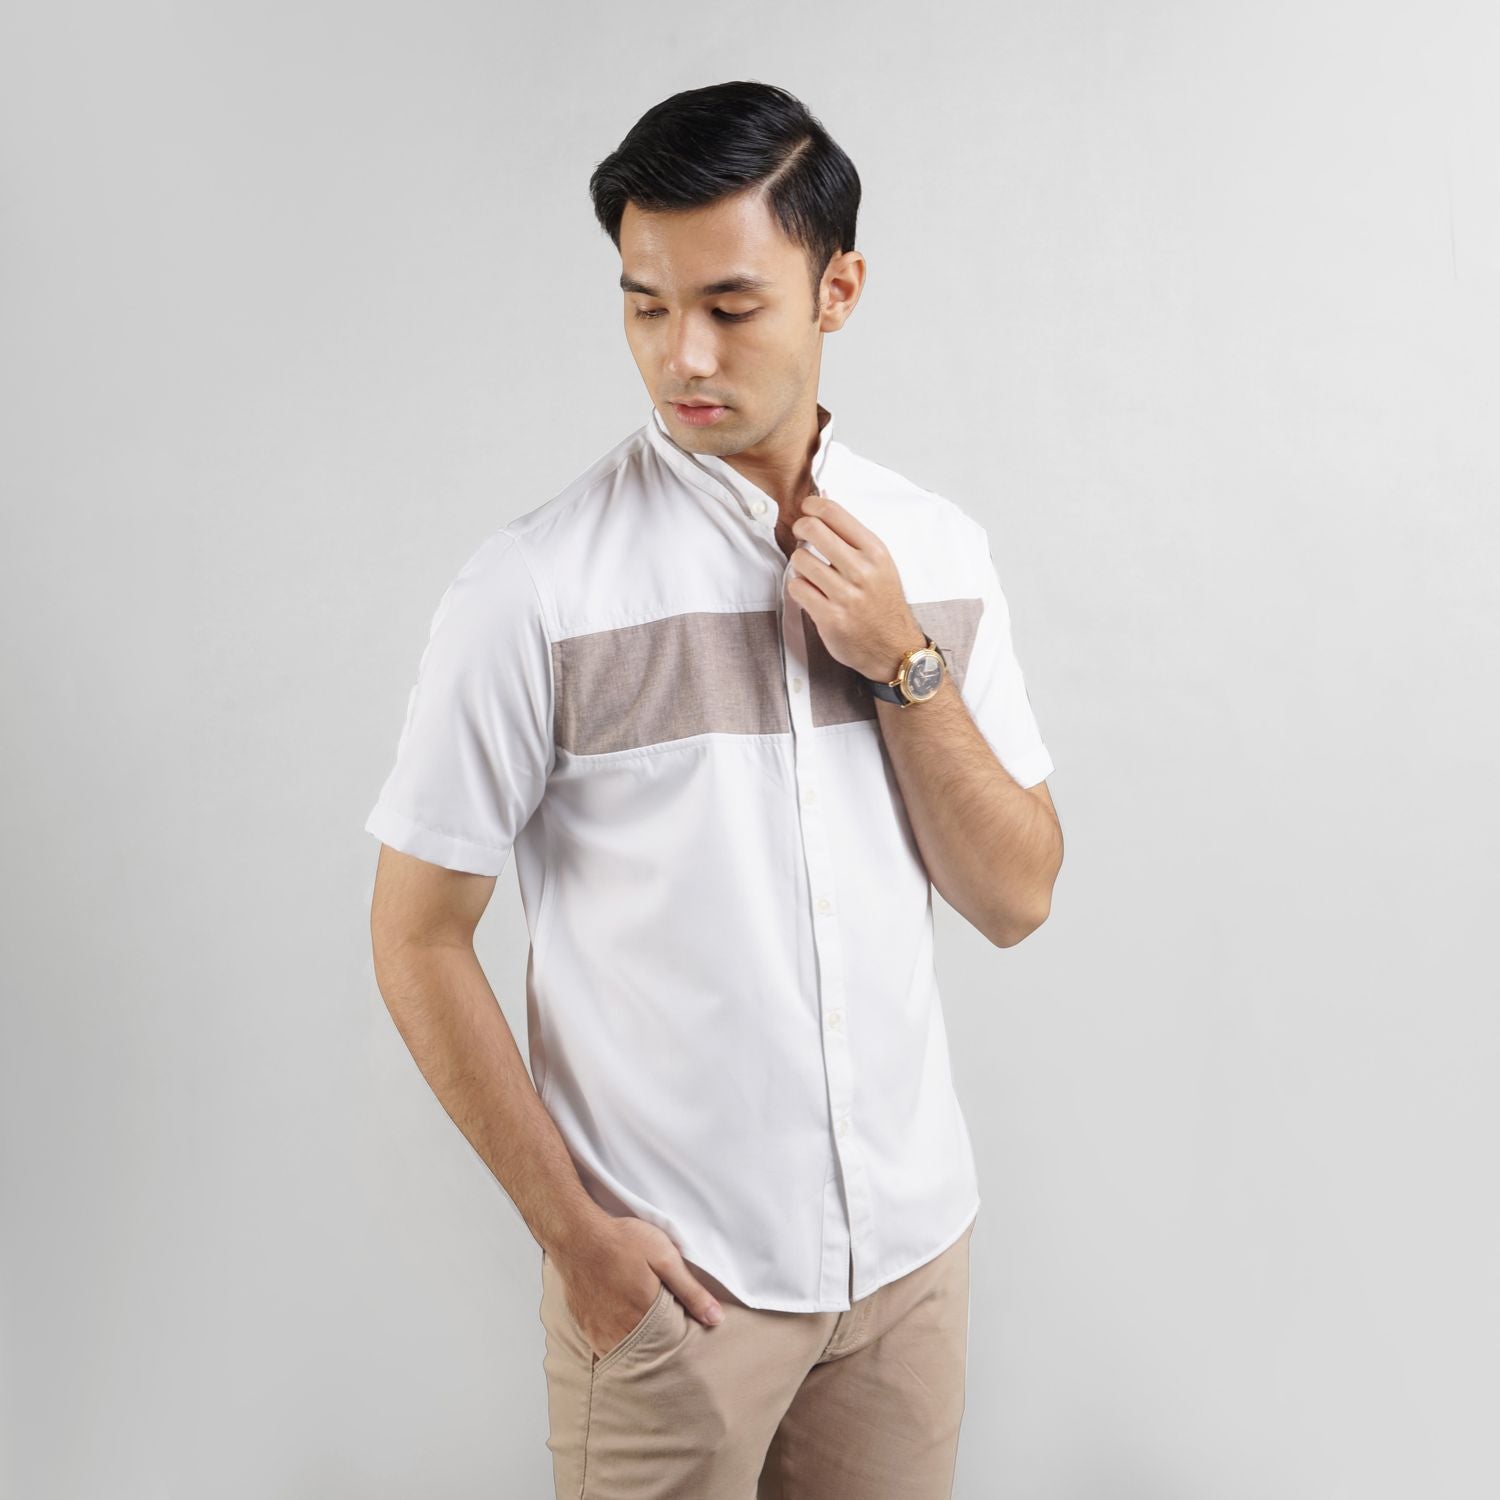 Vierri Essential White Shirts